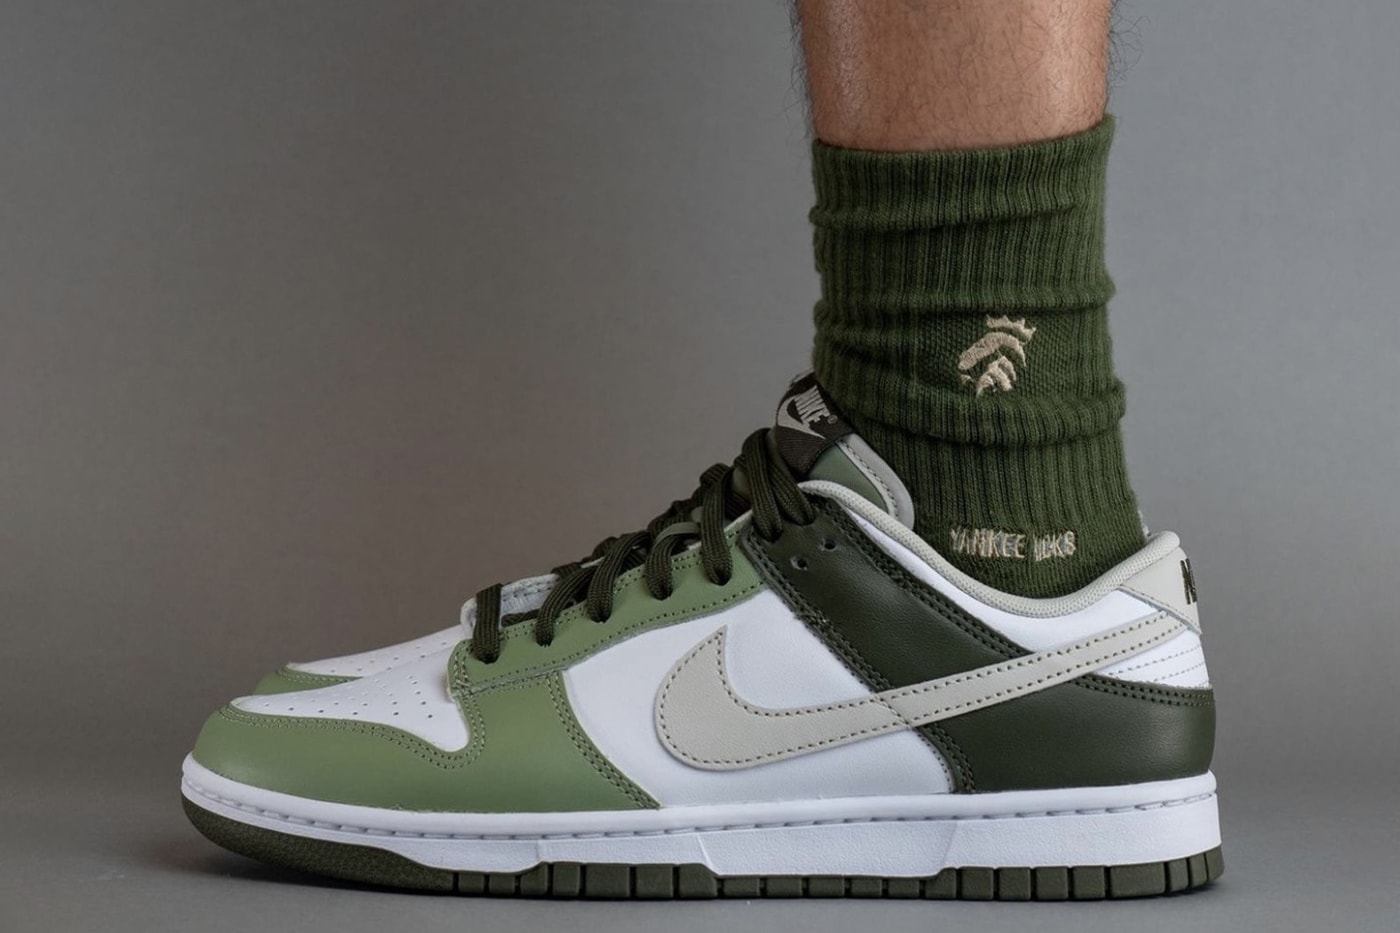 ナイキダンクローからミリタリーテイストな新色モデル “オイルグリーン”が登場 On-Feet Look at the Nike Dunk Low "Oil Green" FN6882-100 White/Light Bone-Oil Green-Cargo Khaki release info 